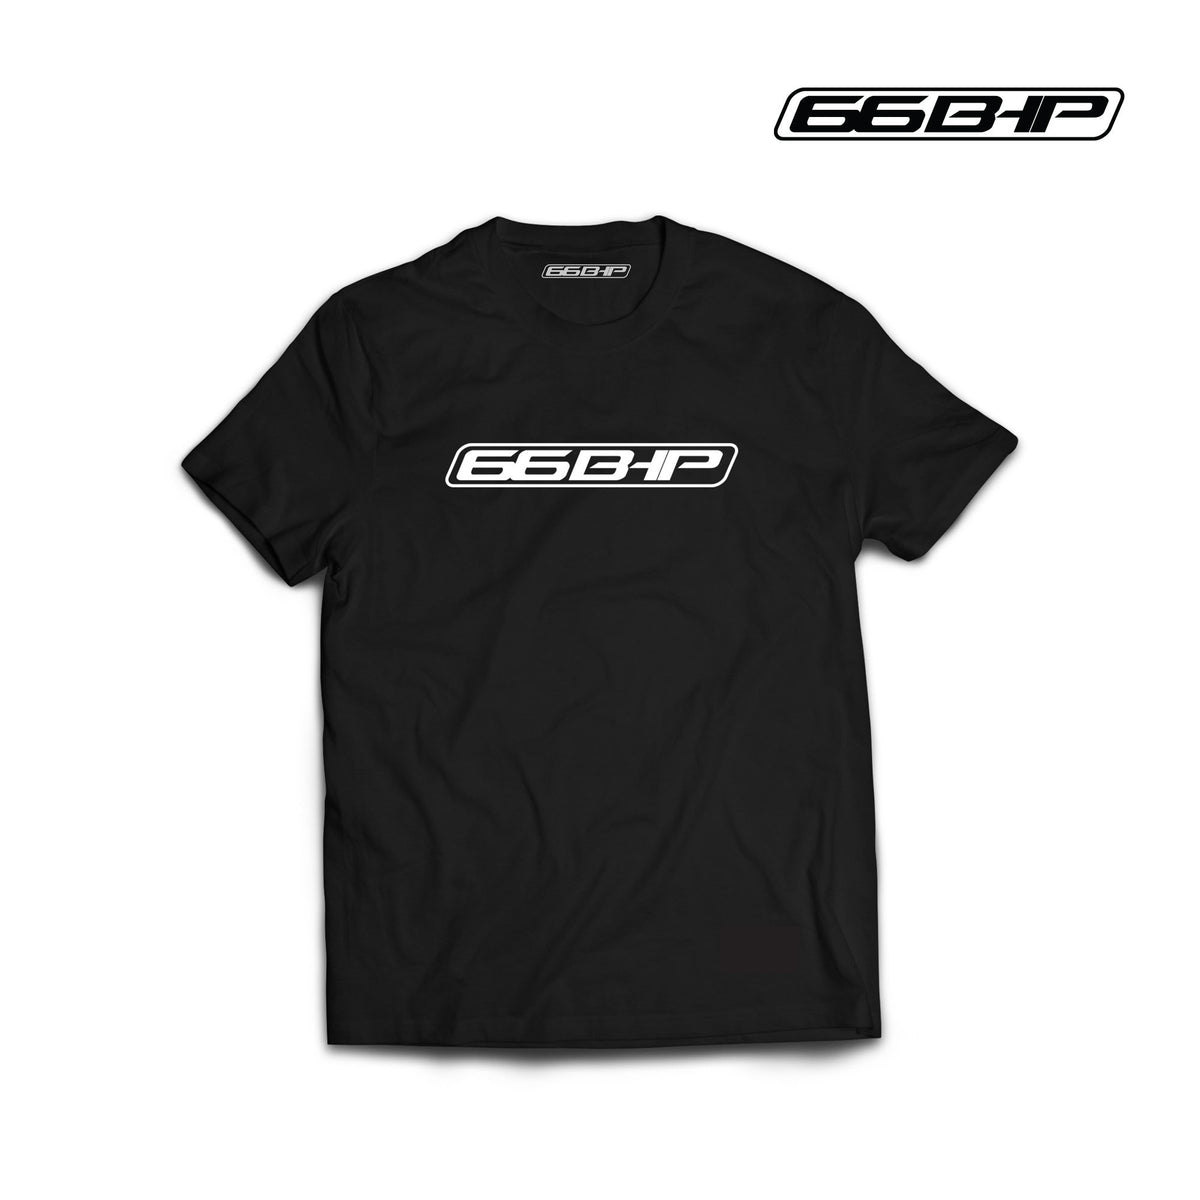 66BHP - T-Shirt Black for Men - LRL Motors